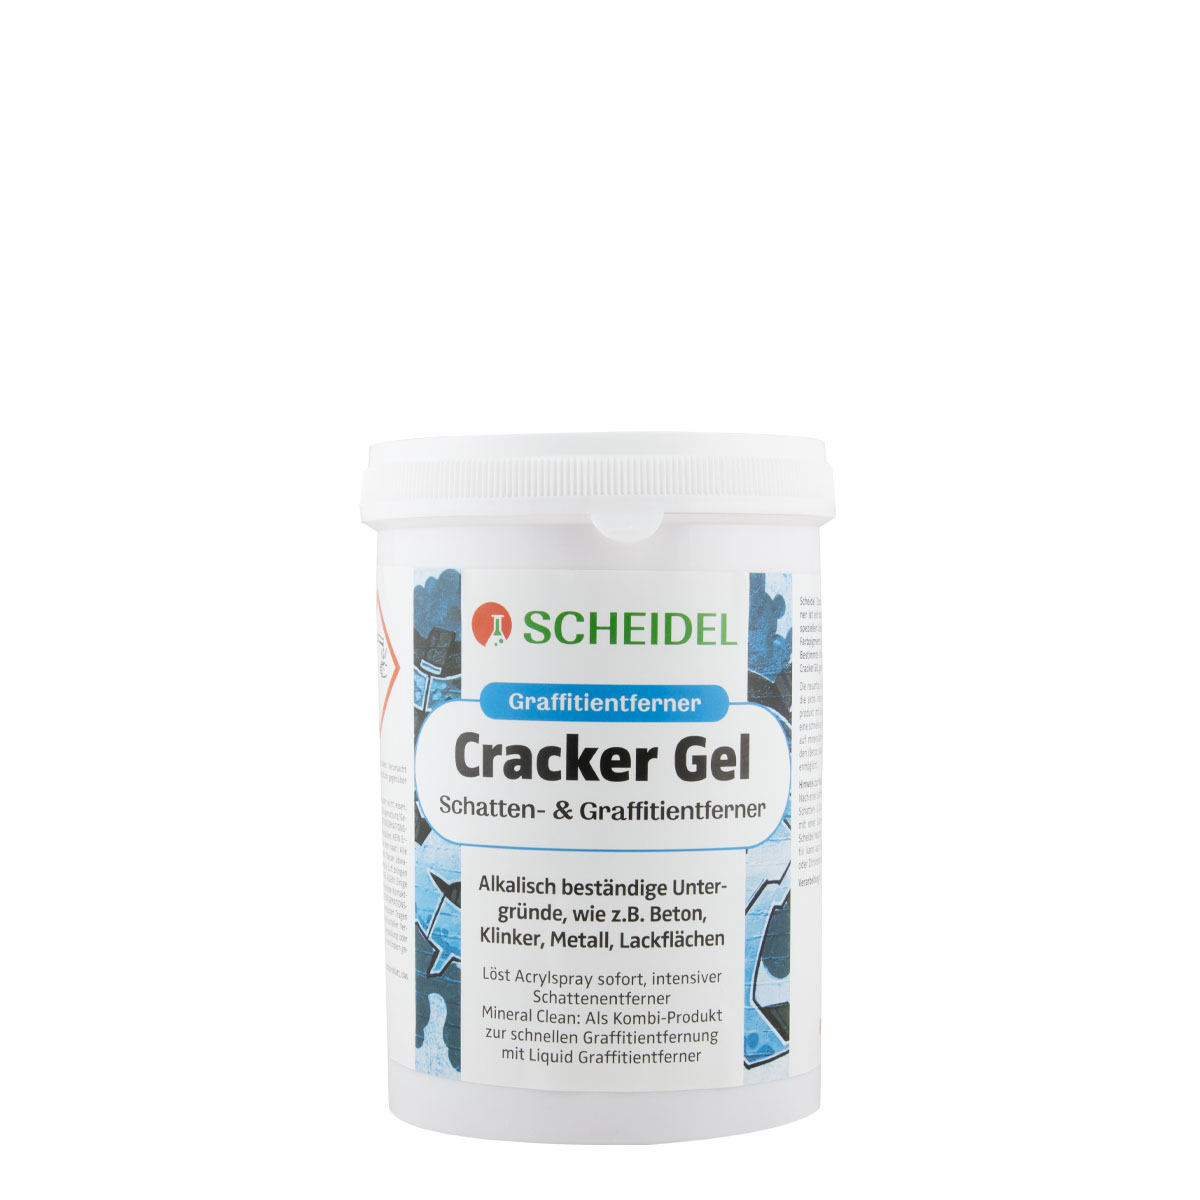 Scheidel Cracker Gel 1L, Schatten- & Graffitientferner